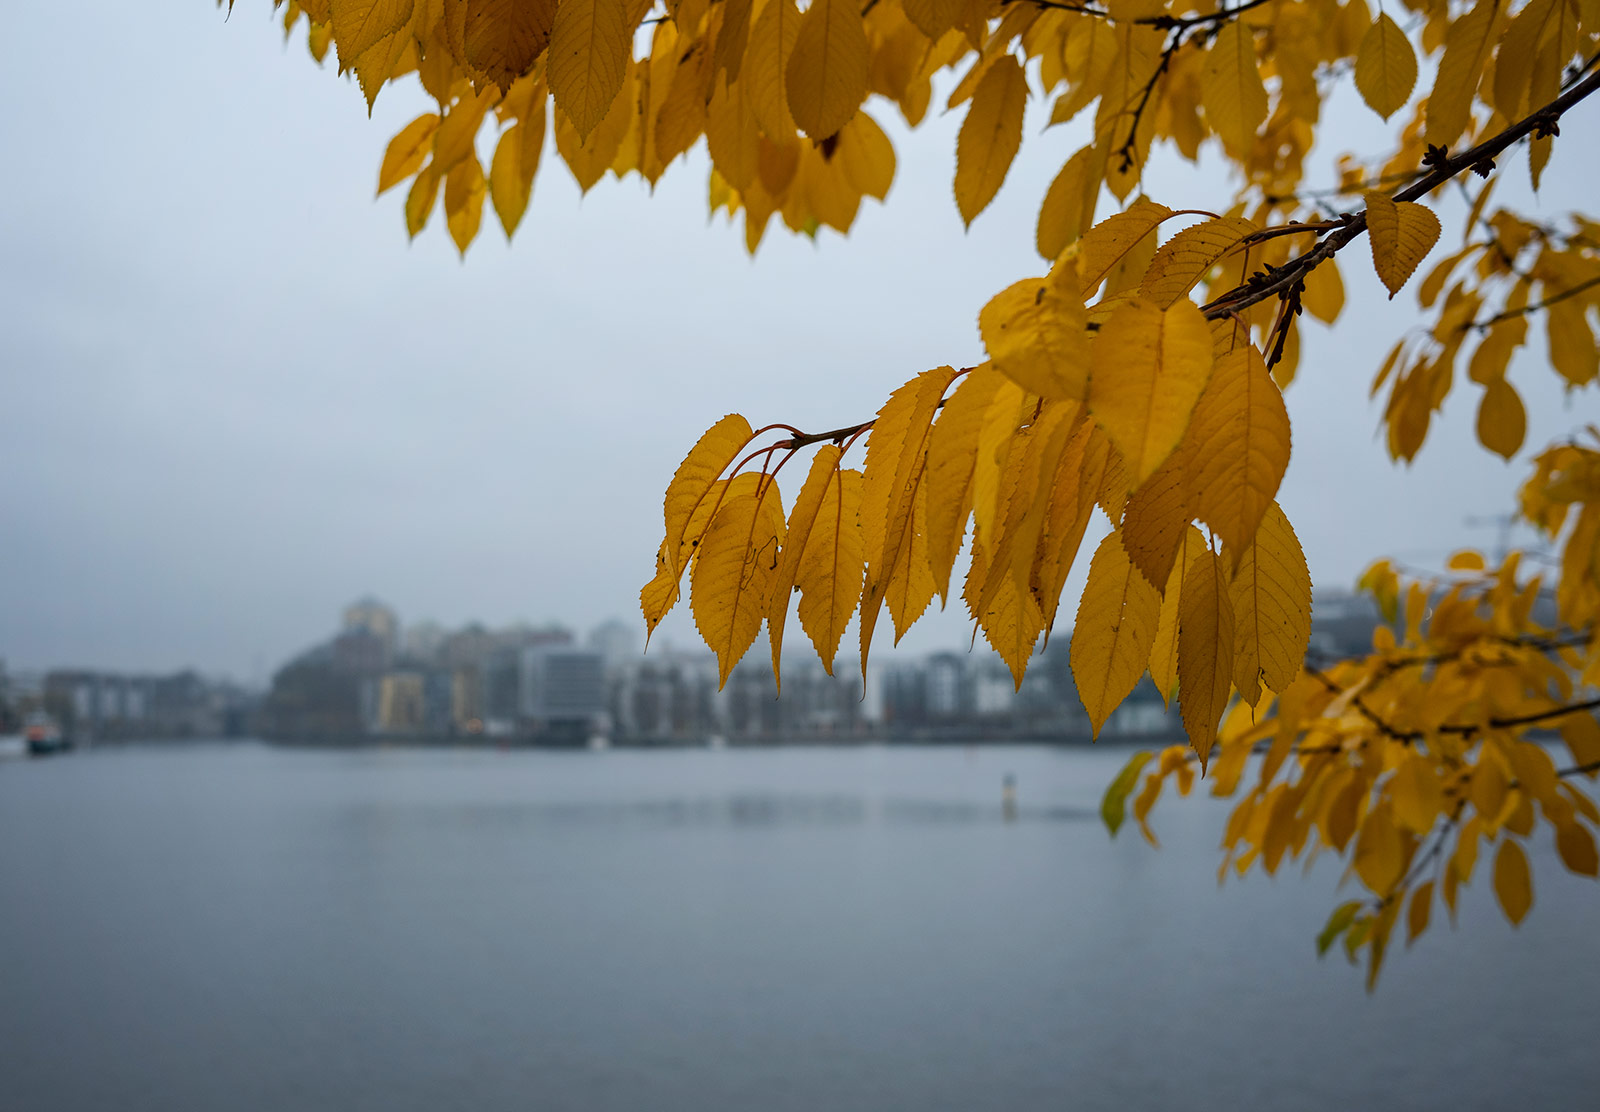 Yellow leaves against grey skies